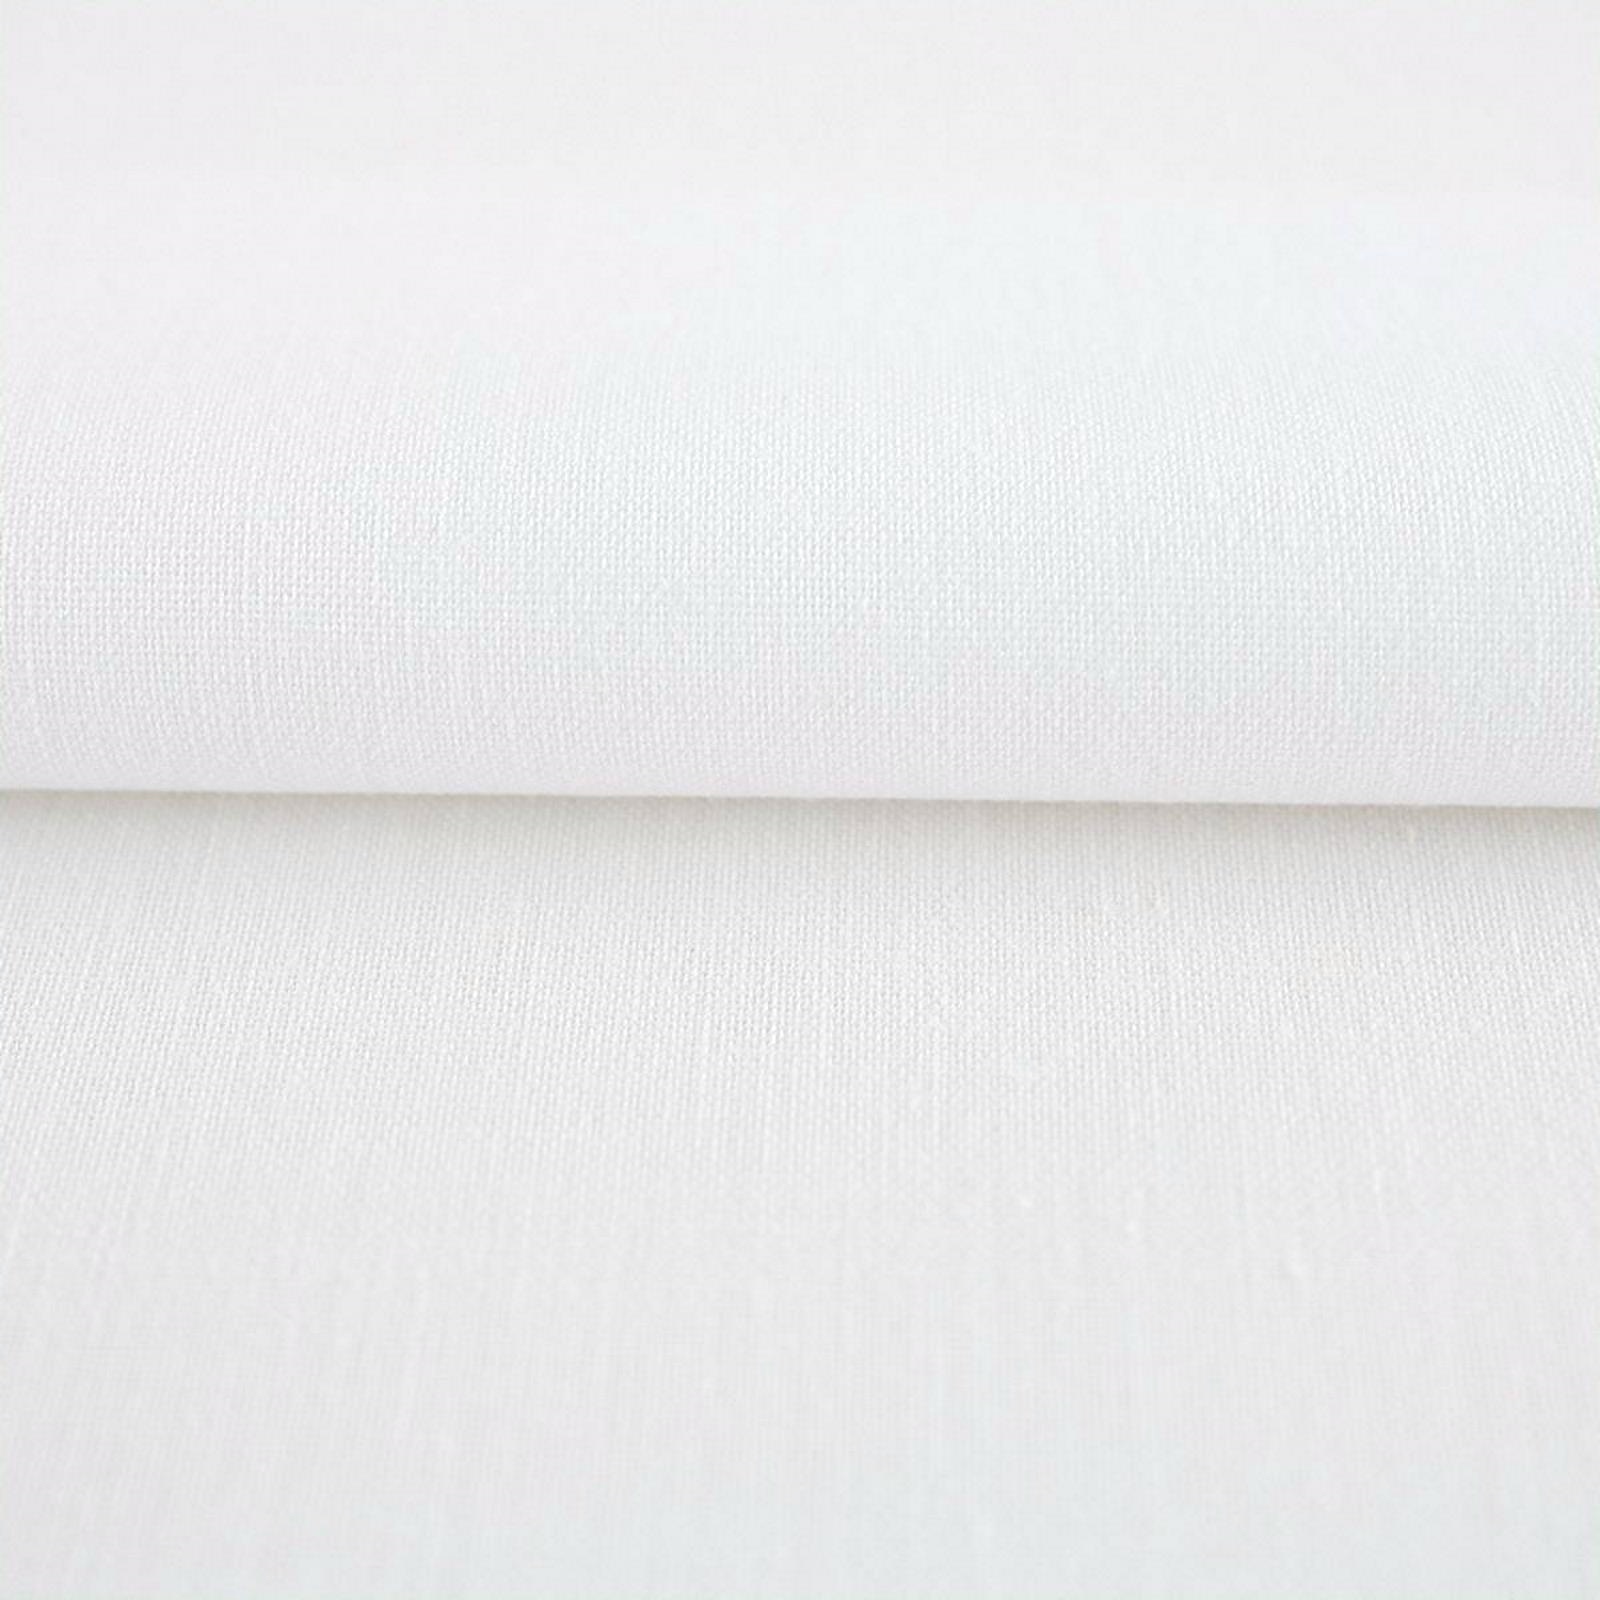 Tischdecke Weiß Baumwolle Linon